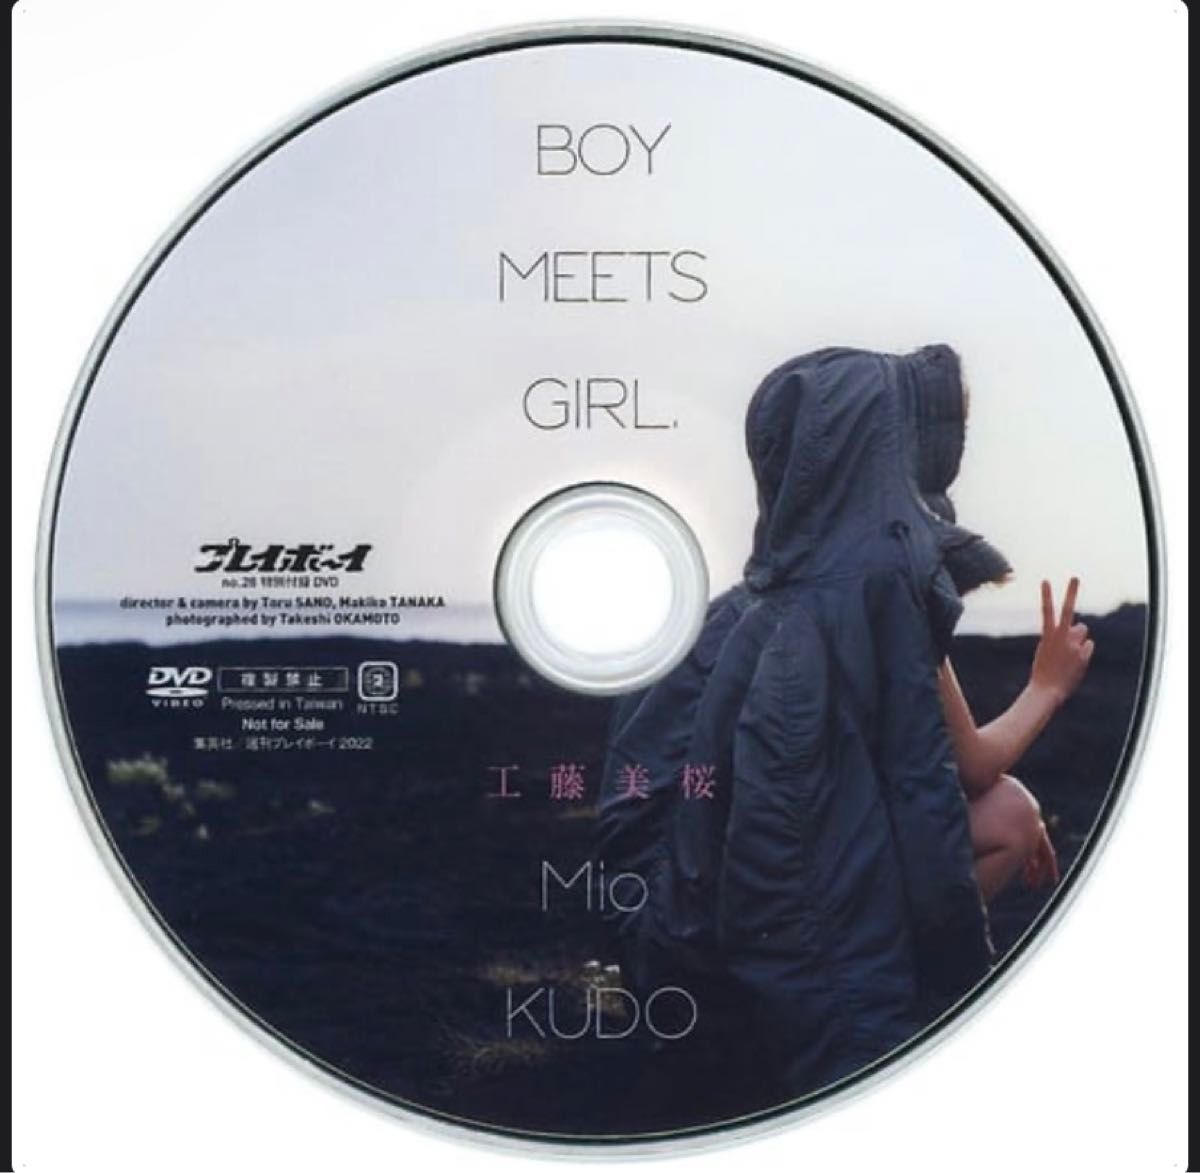 工藤美桜 BOY MEETS GIRL 週刊プレイボーイ2022年 NO.28 特別付録DVDのみ